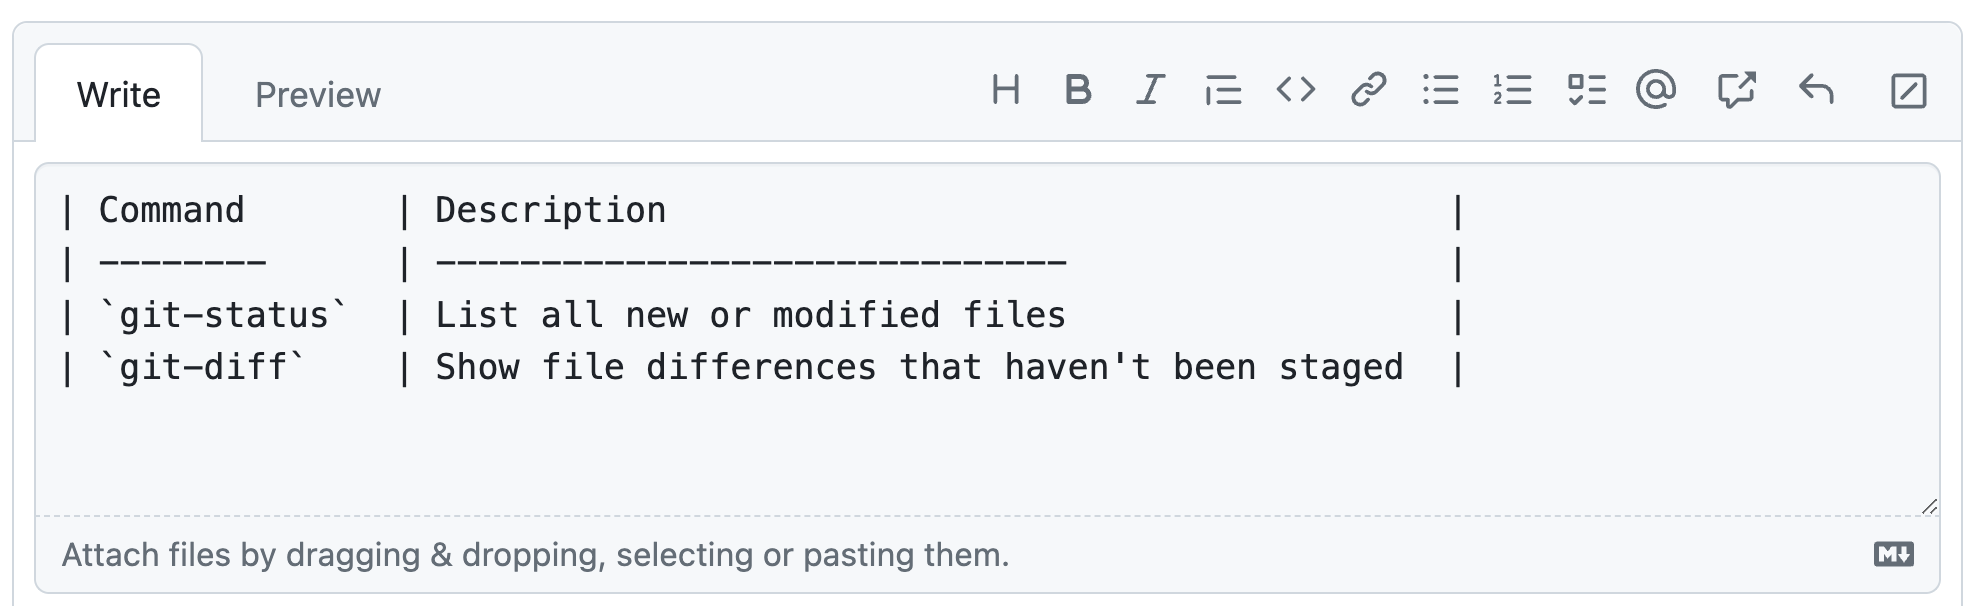 GitHub 注释的屏幕截图，其中显示了列出两个 Git 命令的示例 Markdown 表。 表中的所有字母都具有相同的视觉宽度。